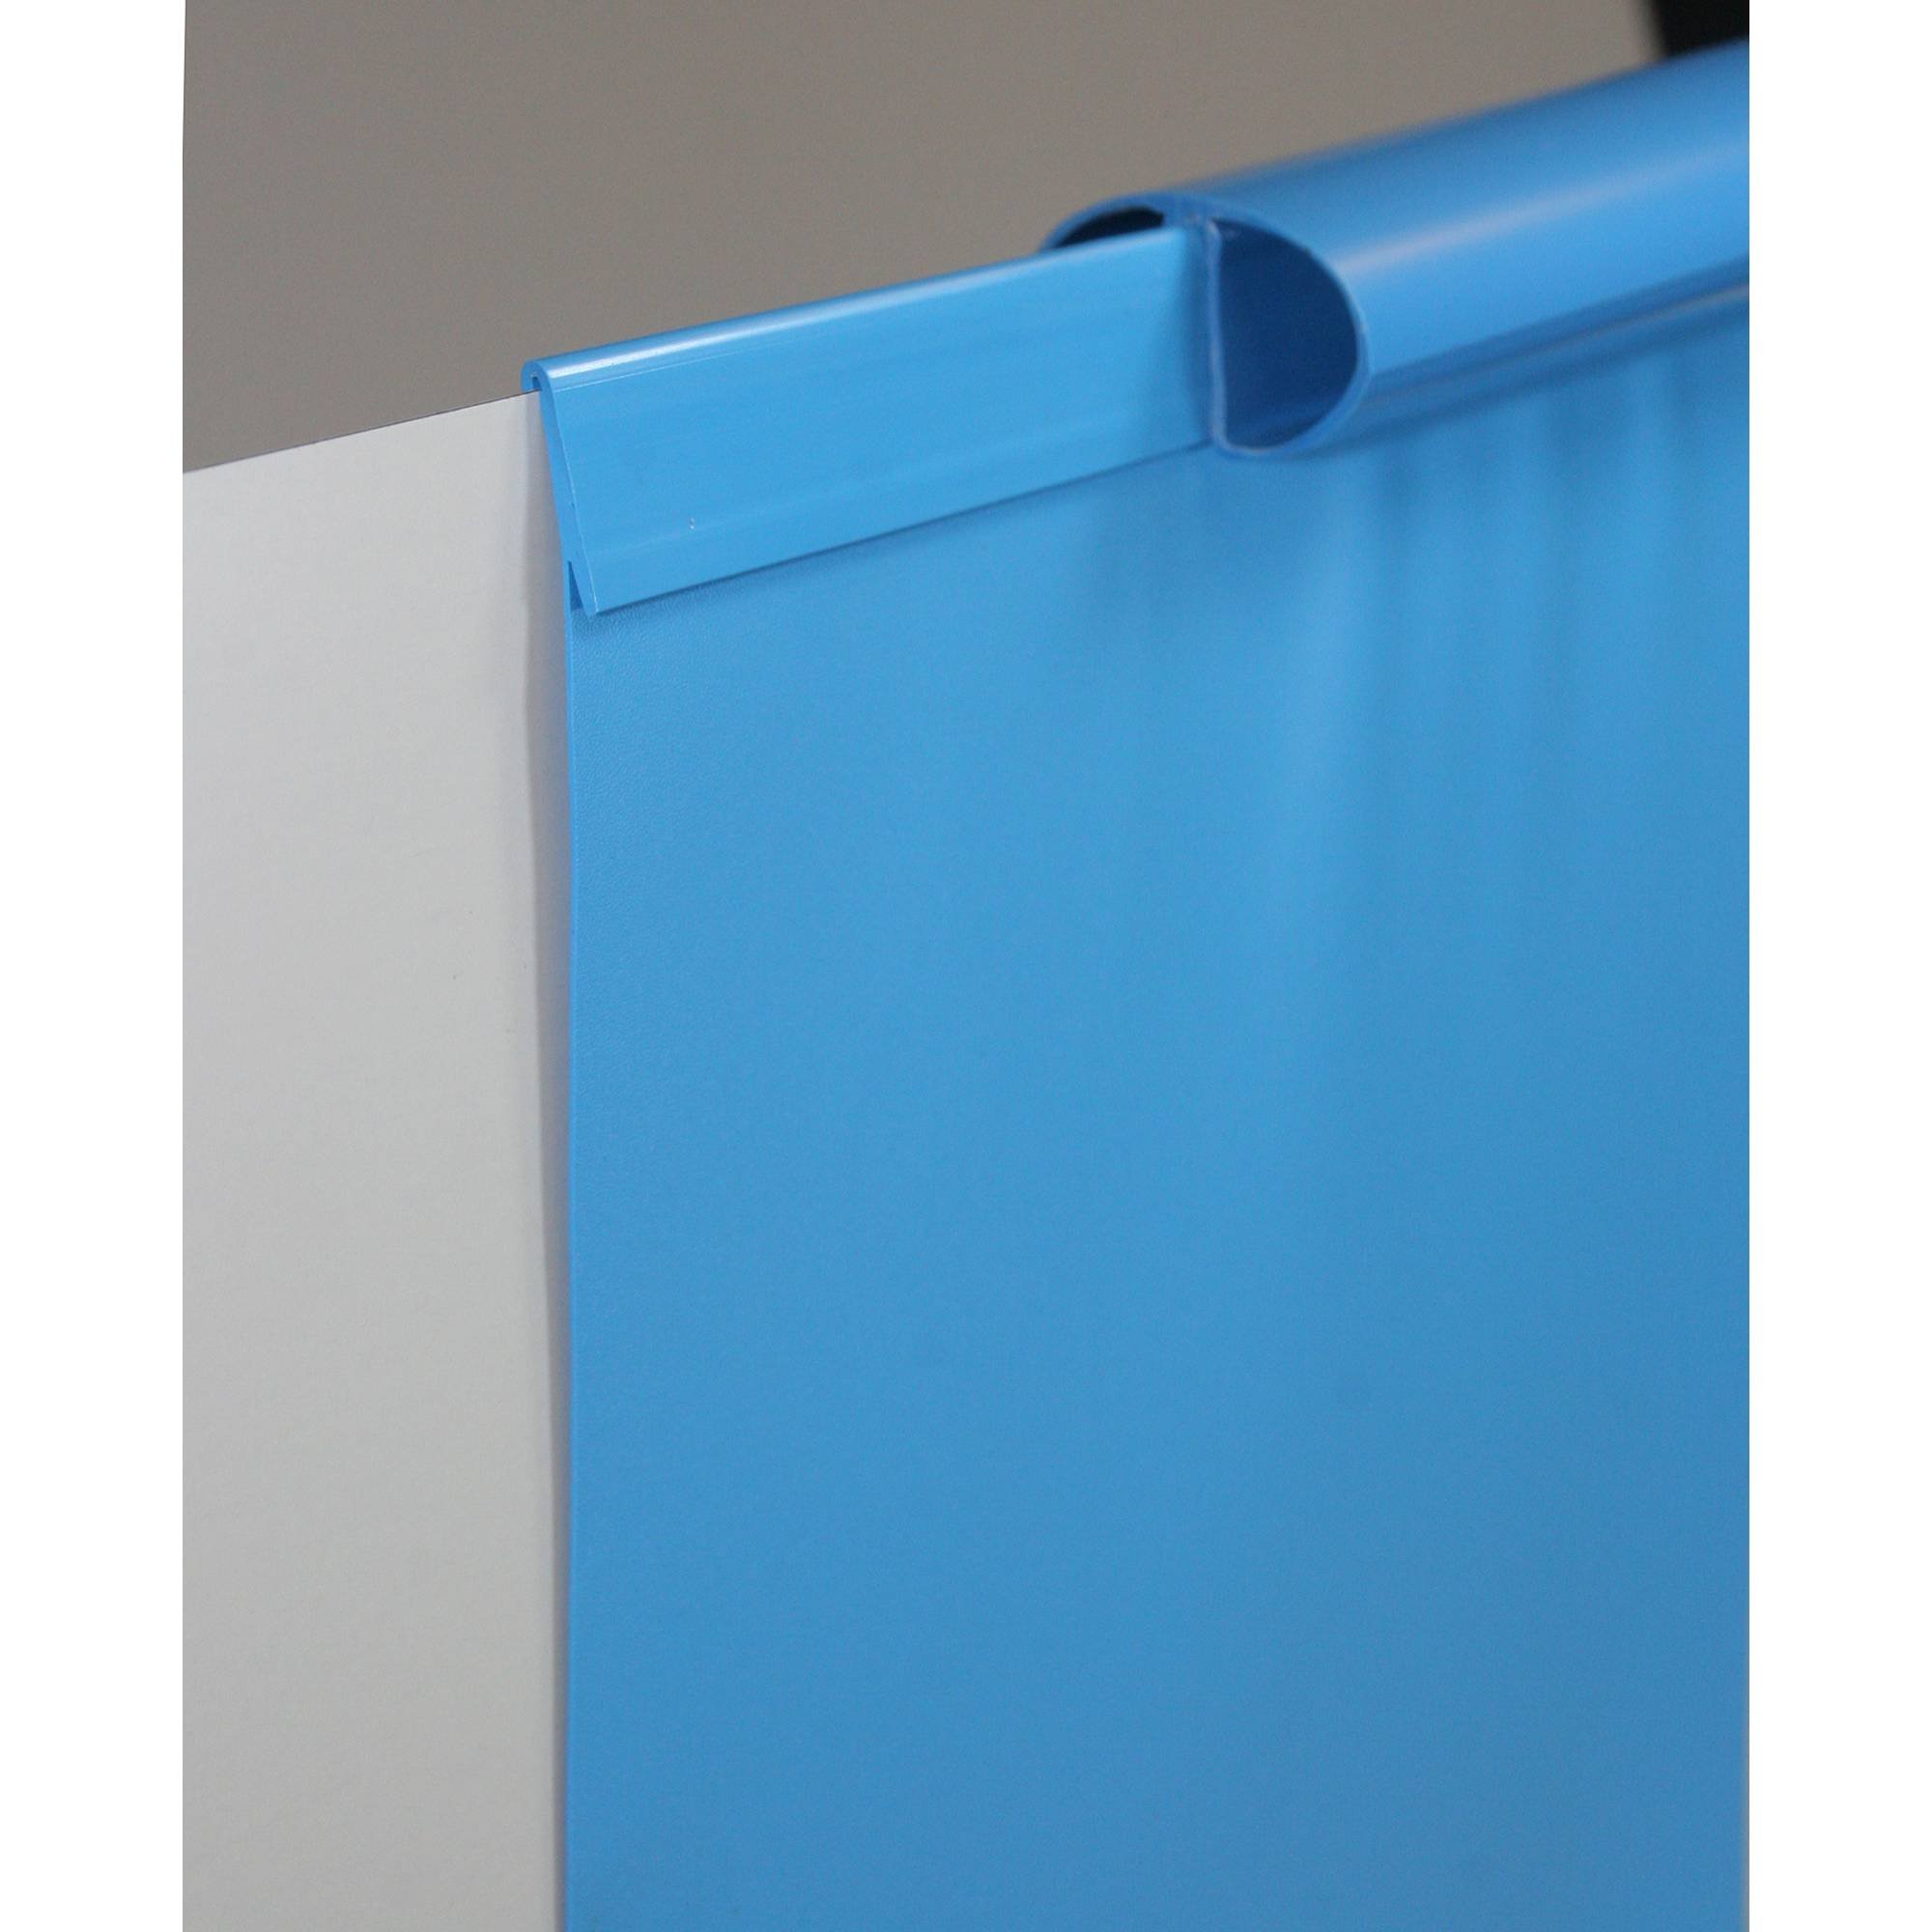 Poolfolie Ersatzfolie Rundbecken 420x150cm - Dicke 0,6mm - Einhängebiese - blau